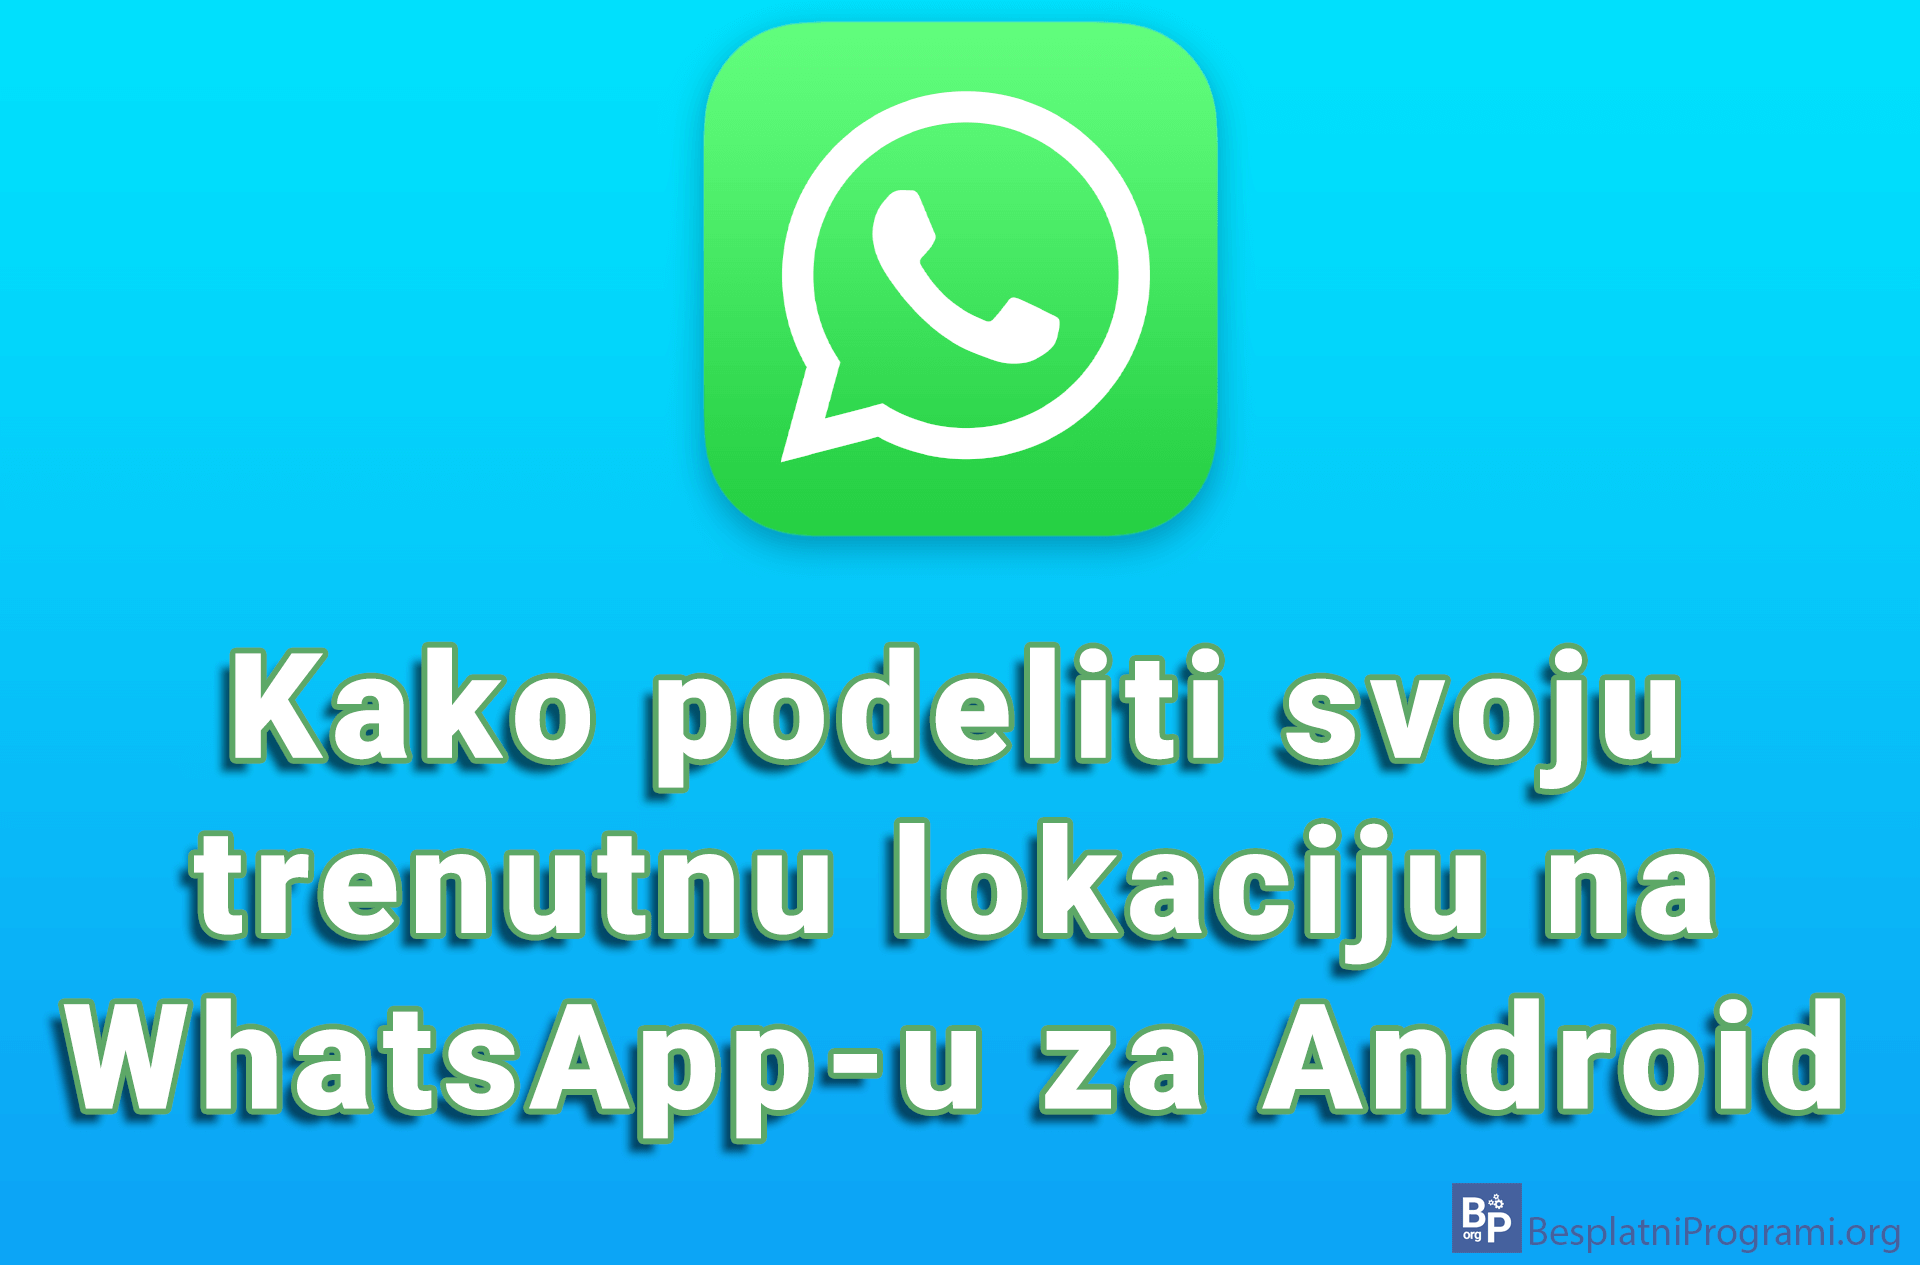 Kako podeliti svoju trenutnu lokaciju na WhatsApp-u za Android